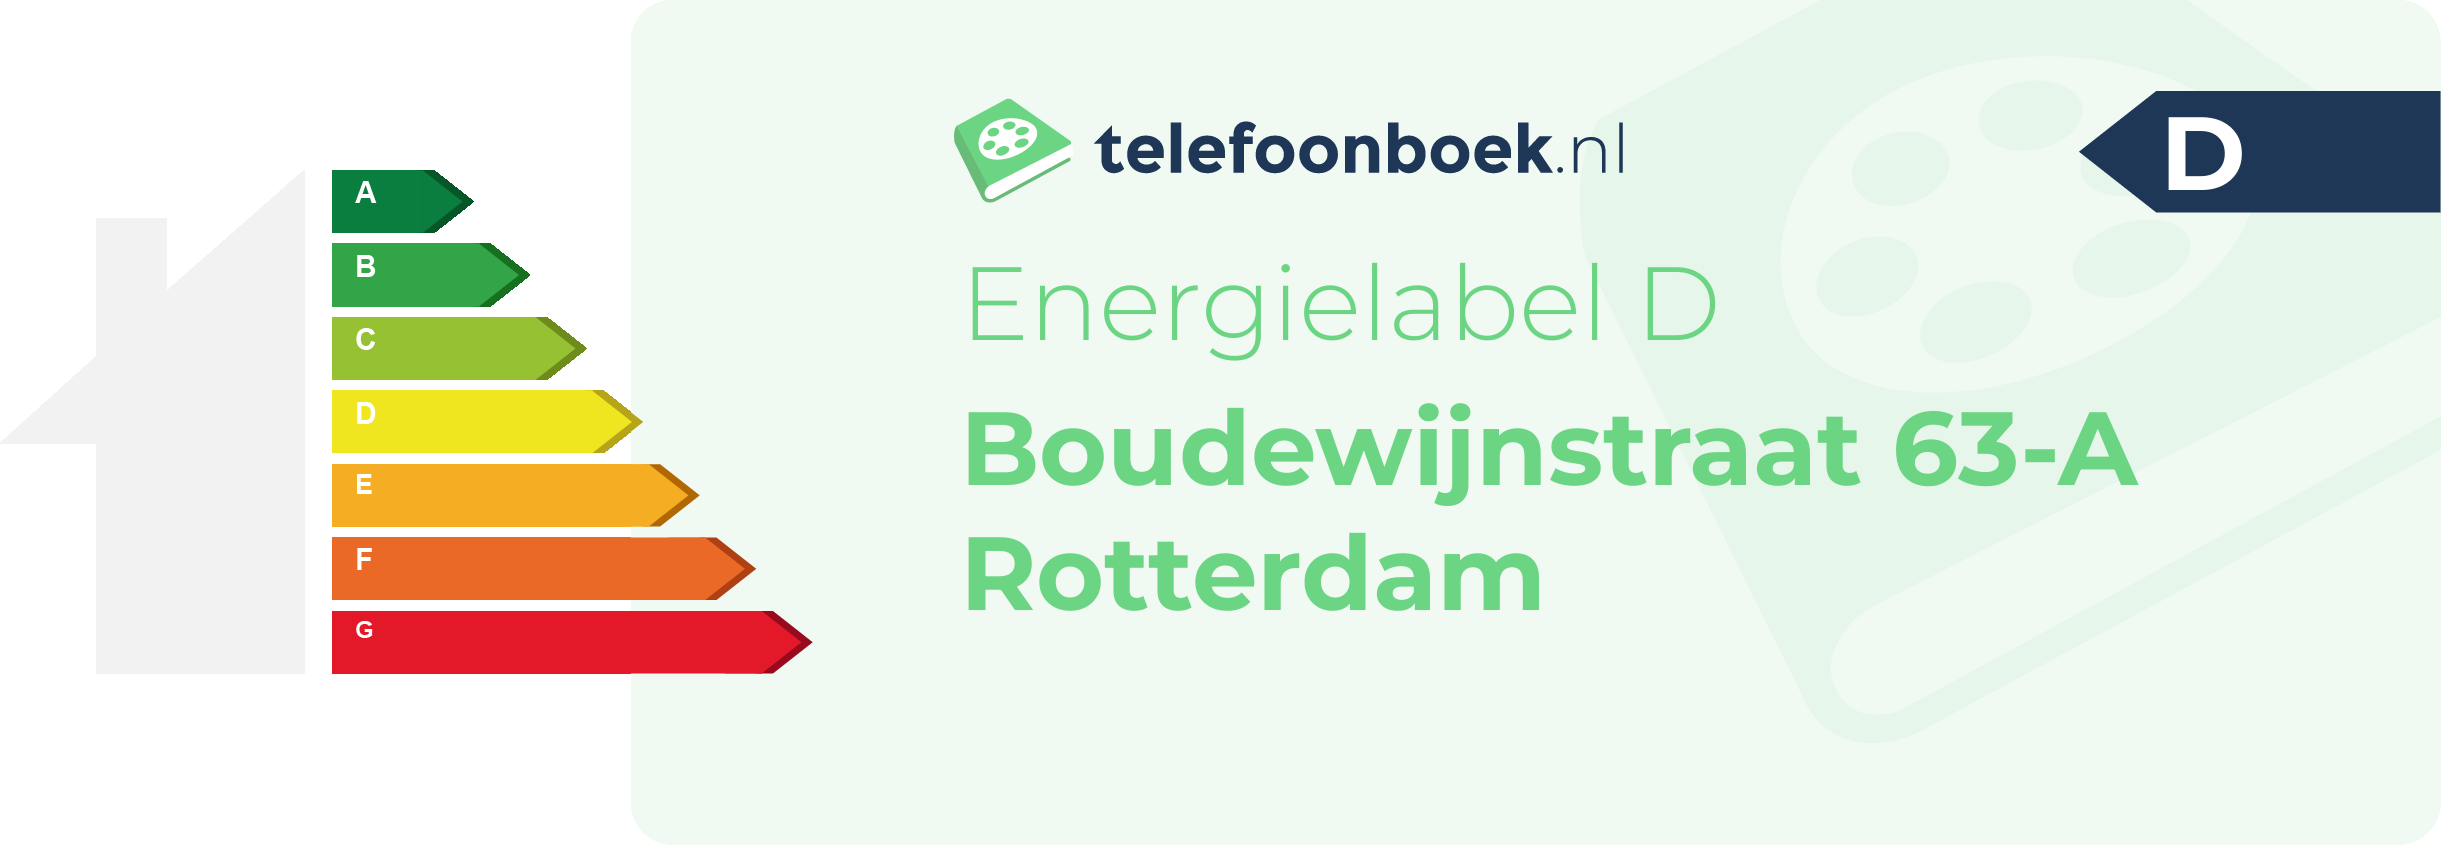 Energielabel Boudewijnstraat 63-A Rotterdam